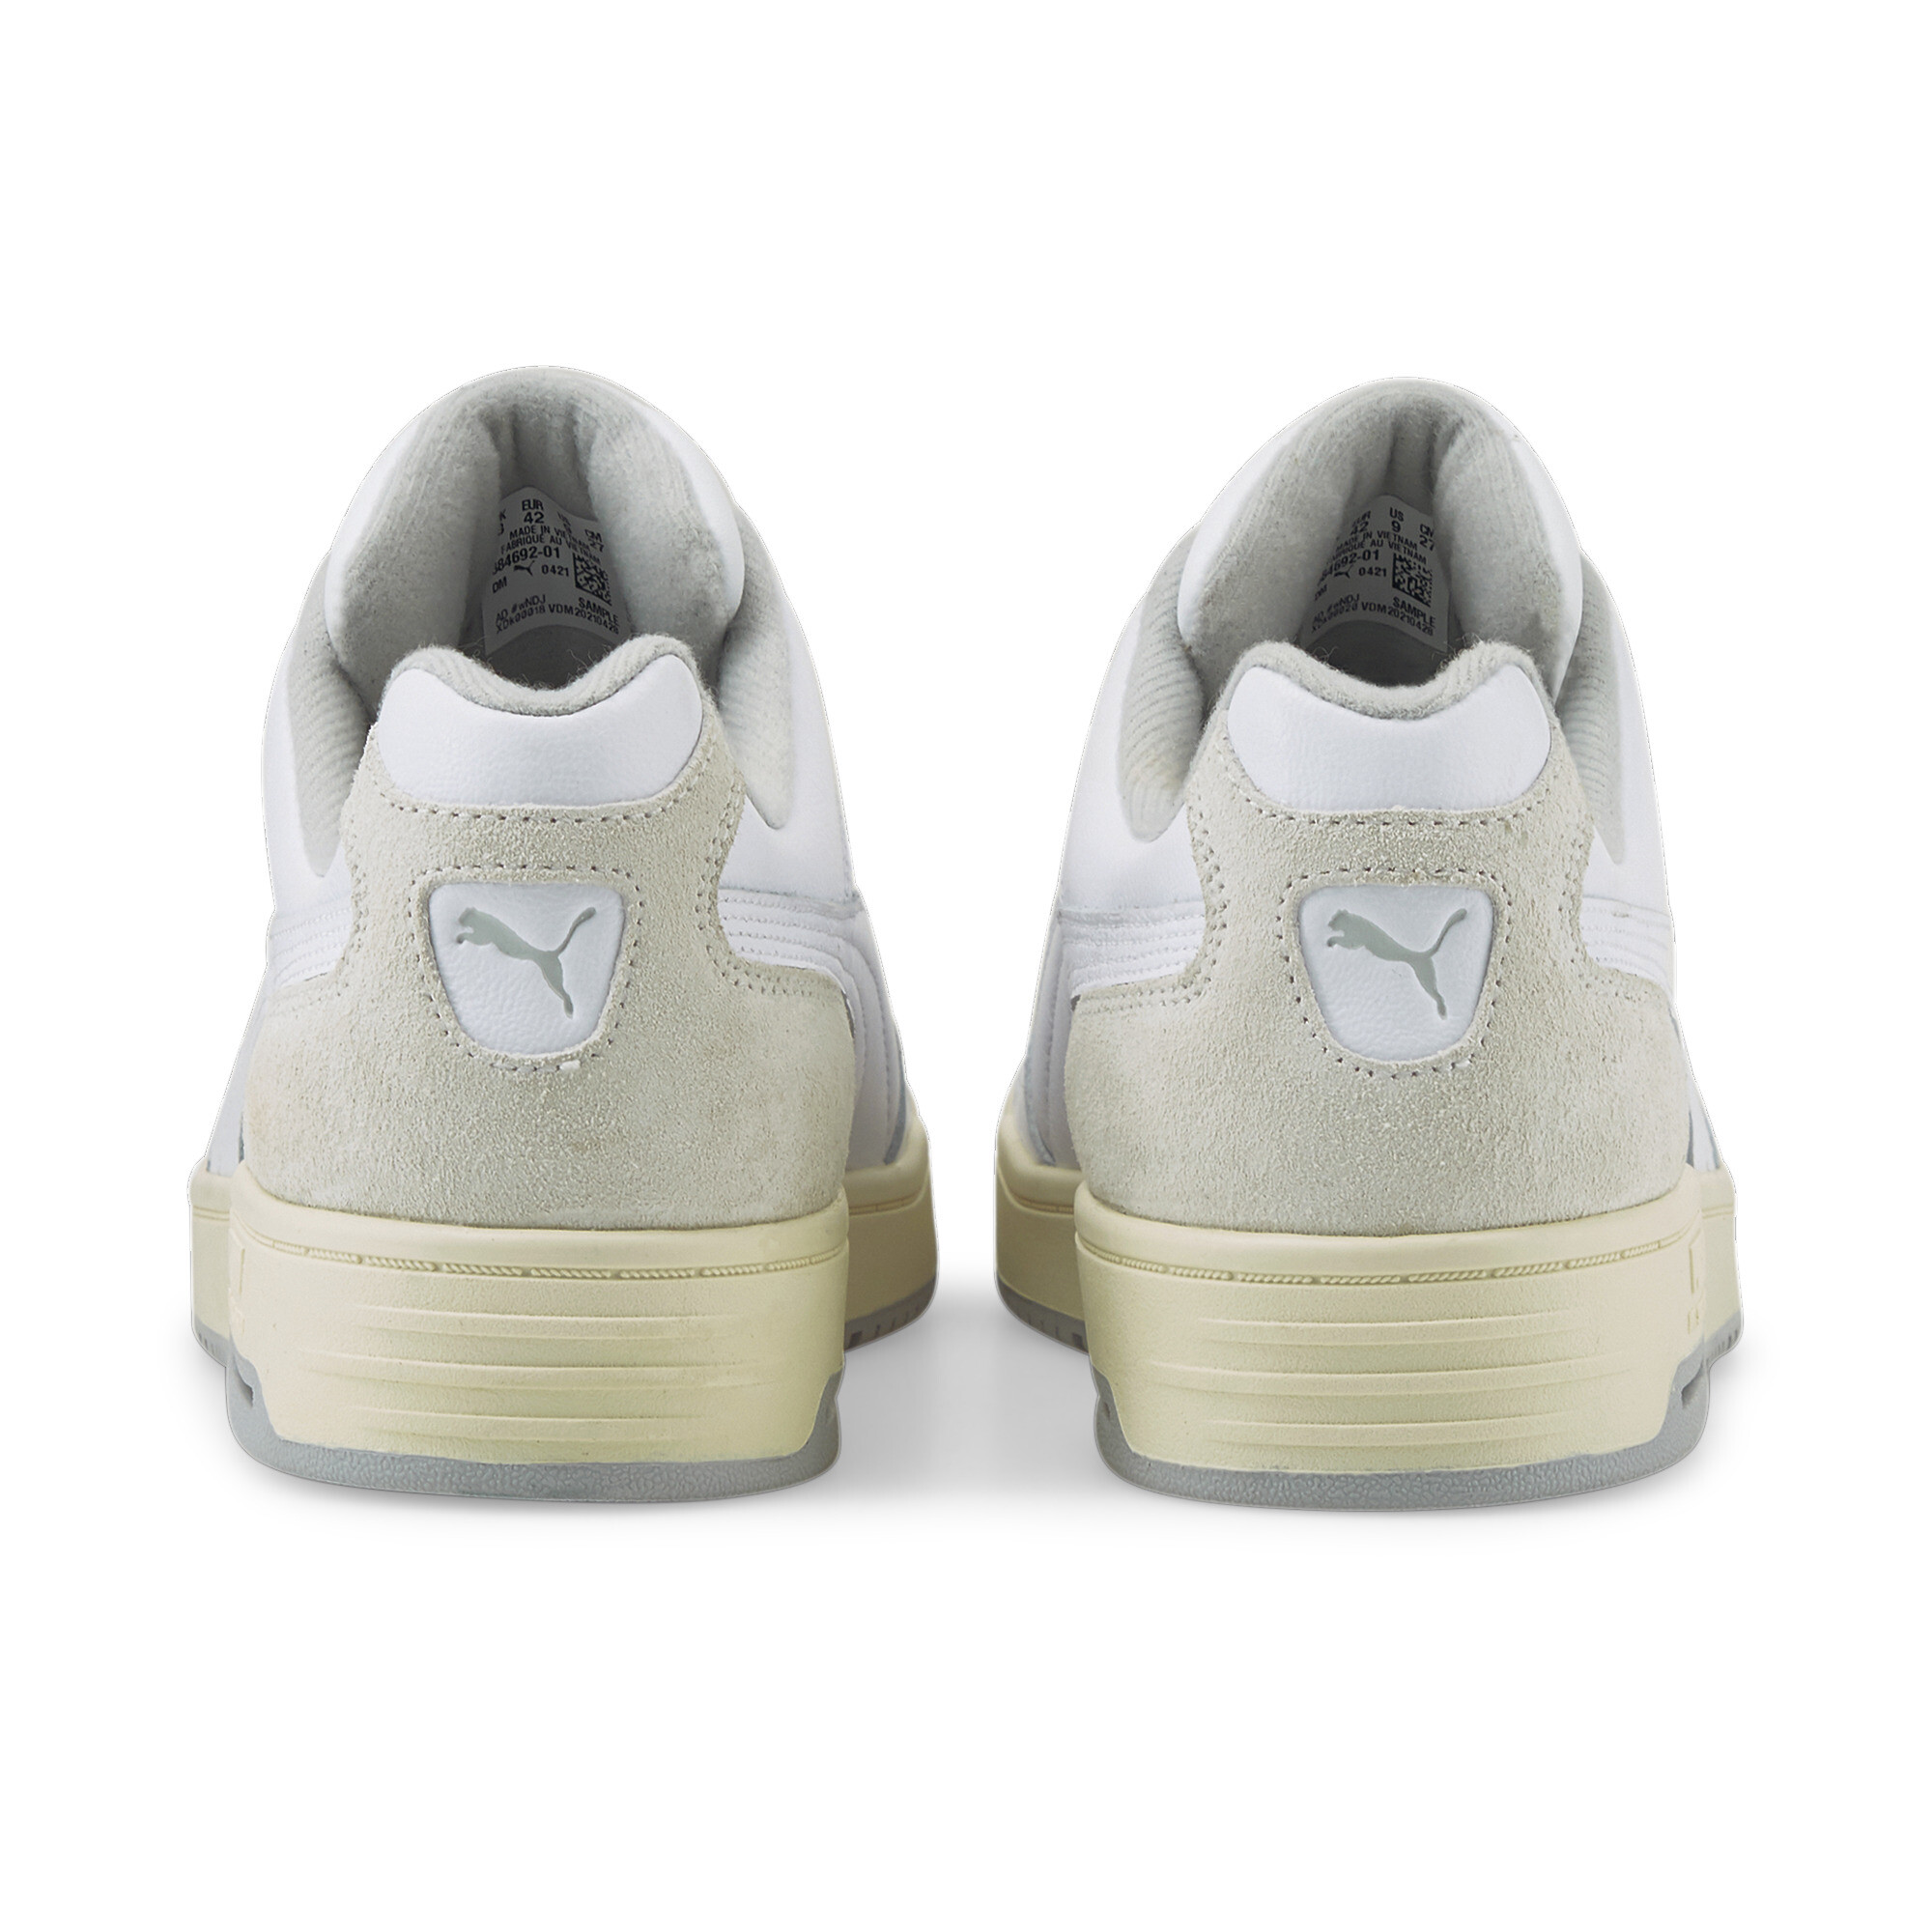 Puma Slipstream Lo Retro Trainers, White, Size 43, Shoes